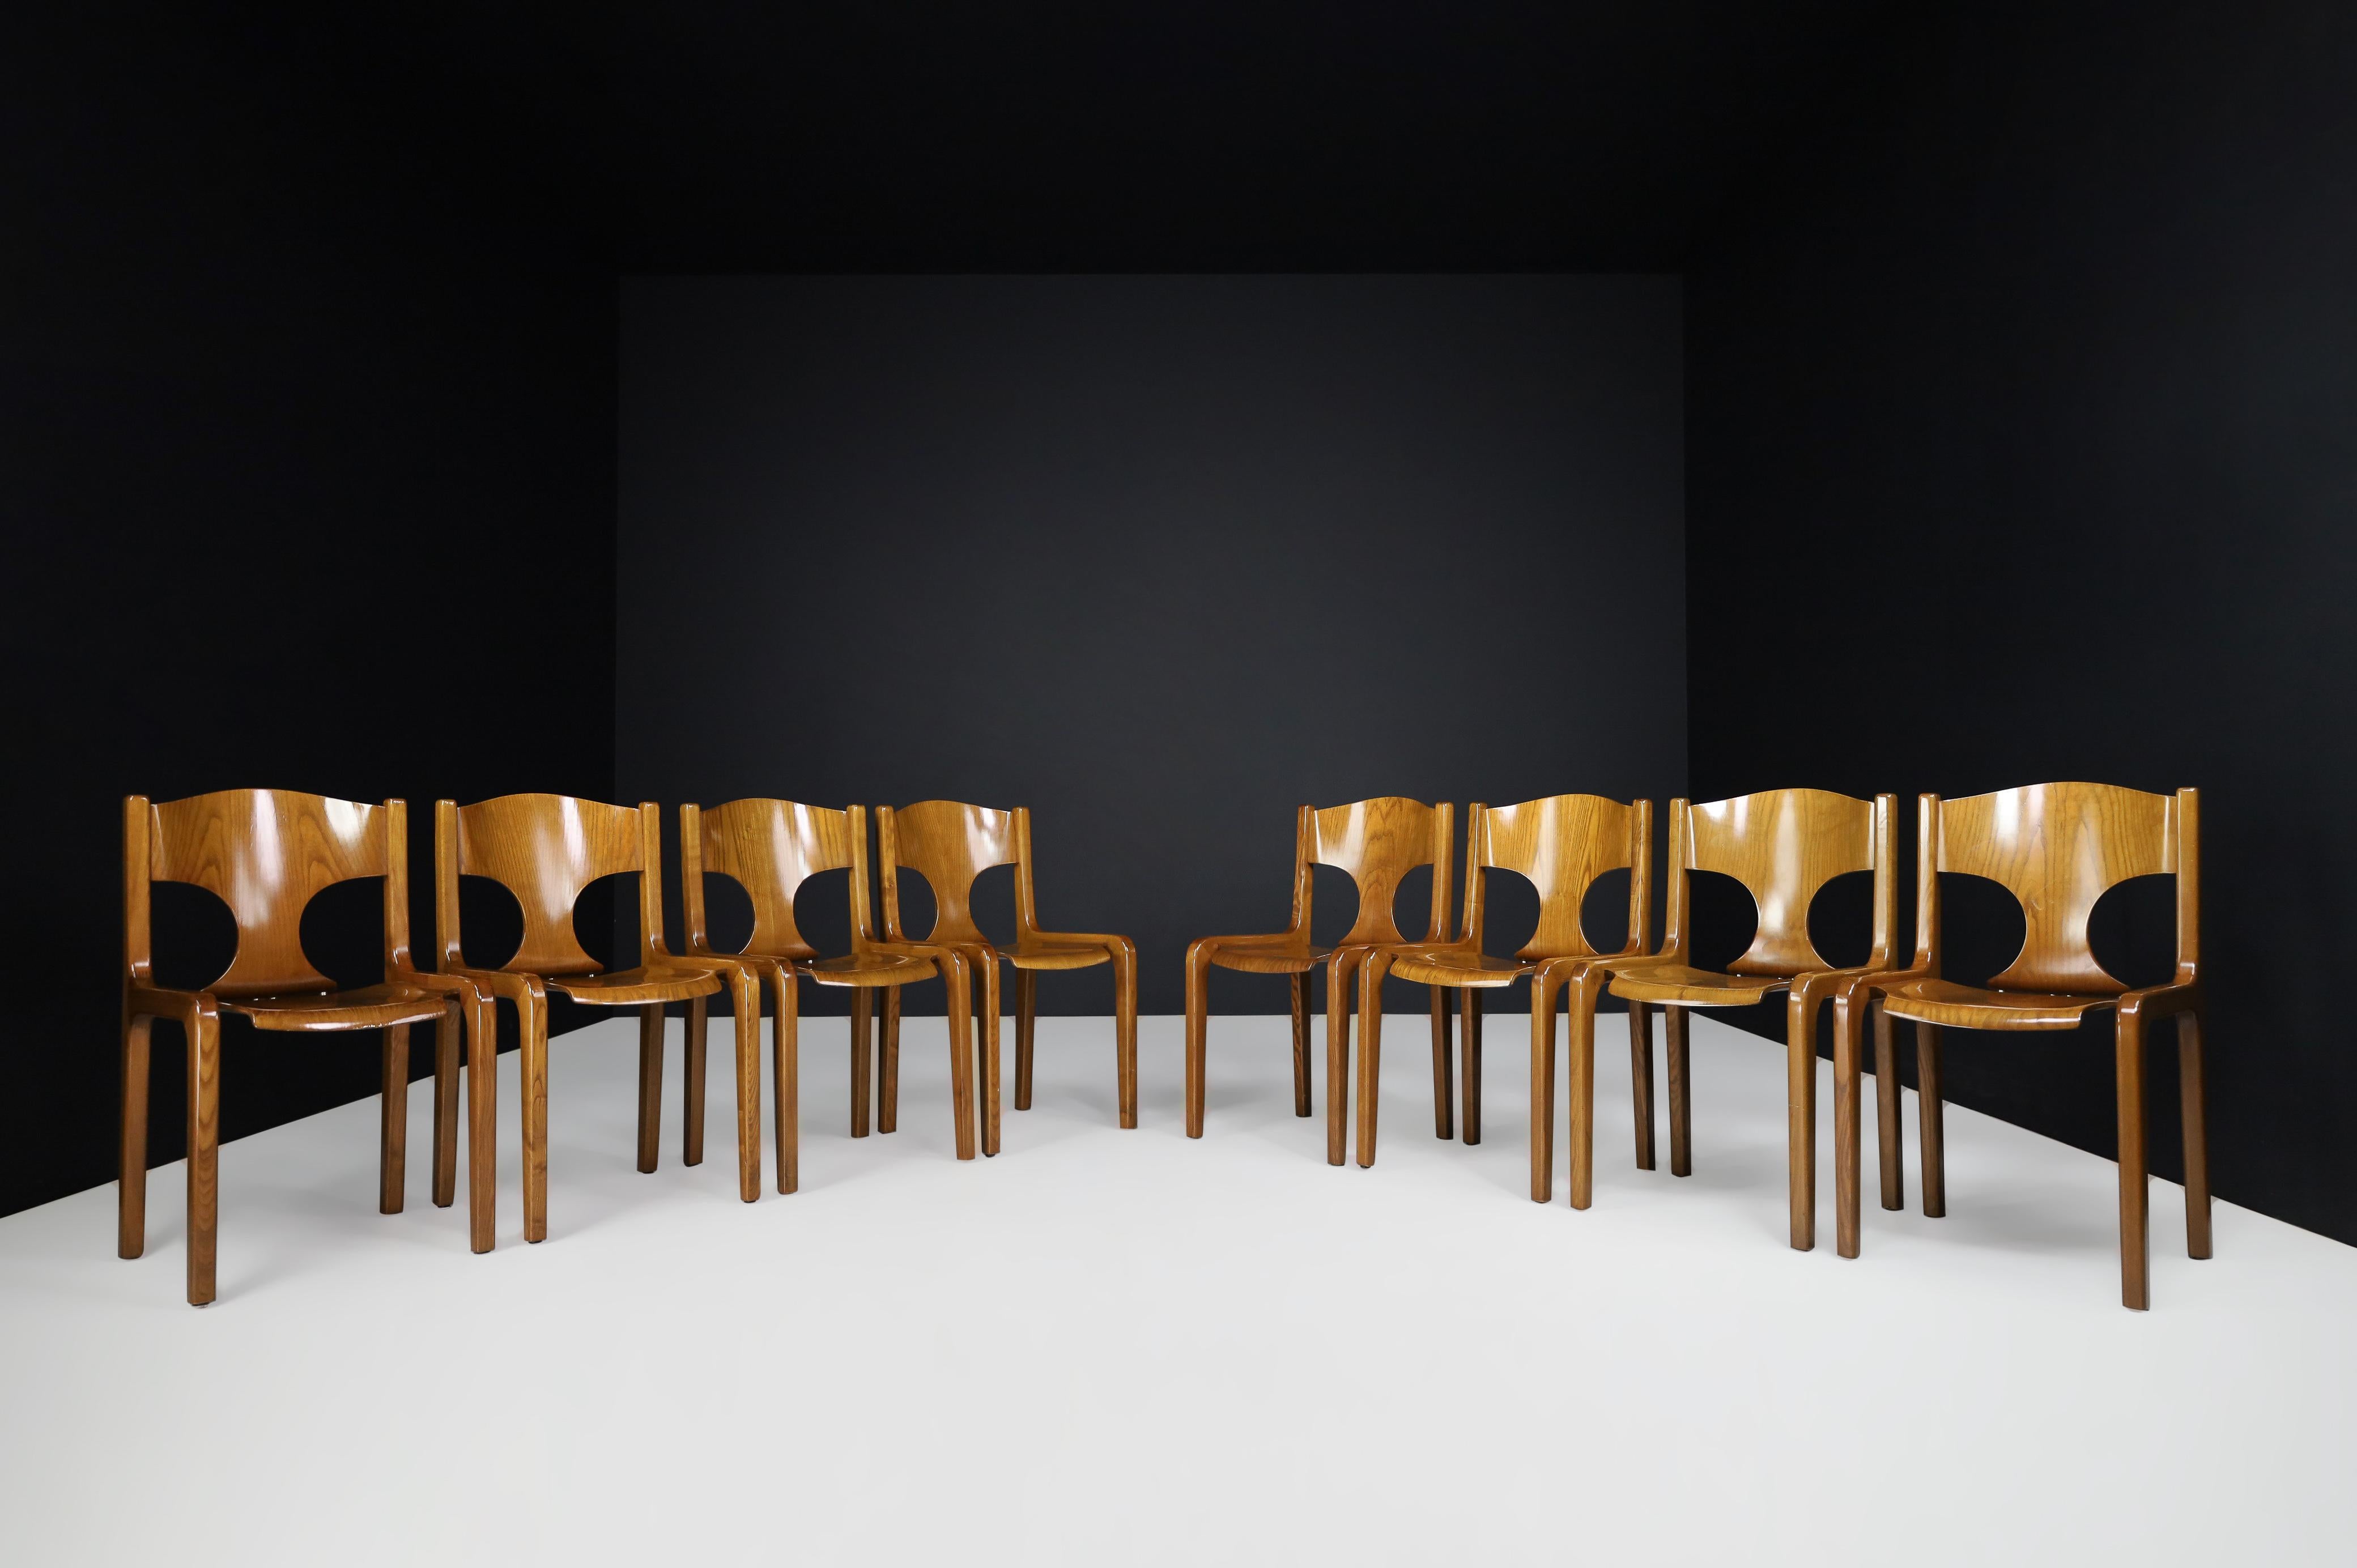 Chaises de salle à manger Augusto Savini pour Pozzi, Italie 1968.

Un magnifique ensemble de chaises de salle à manger de grande qualité, conçu par l'architecte Augusto Savini pour la manufacture Pozzi à la fin des années 1960, a été présenté pour